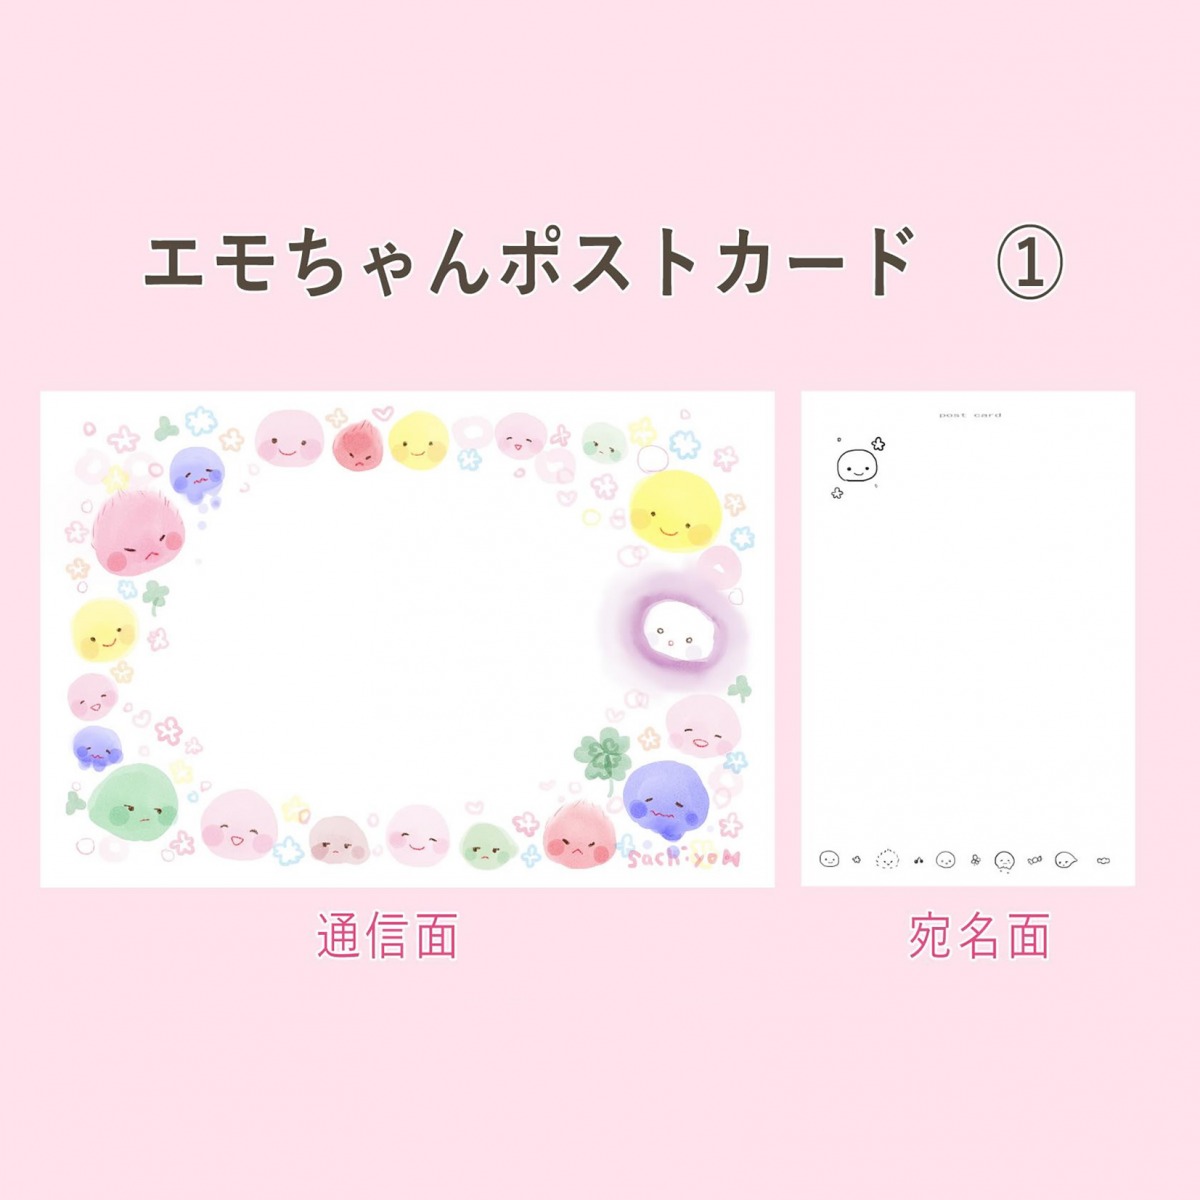 エモちゃんポストカード (1)